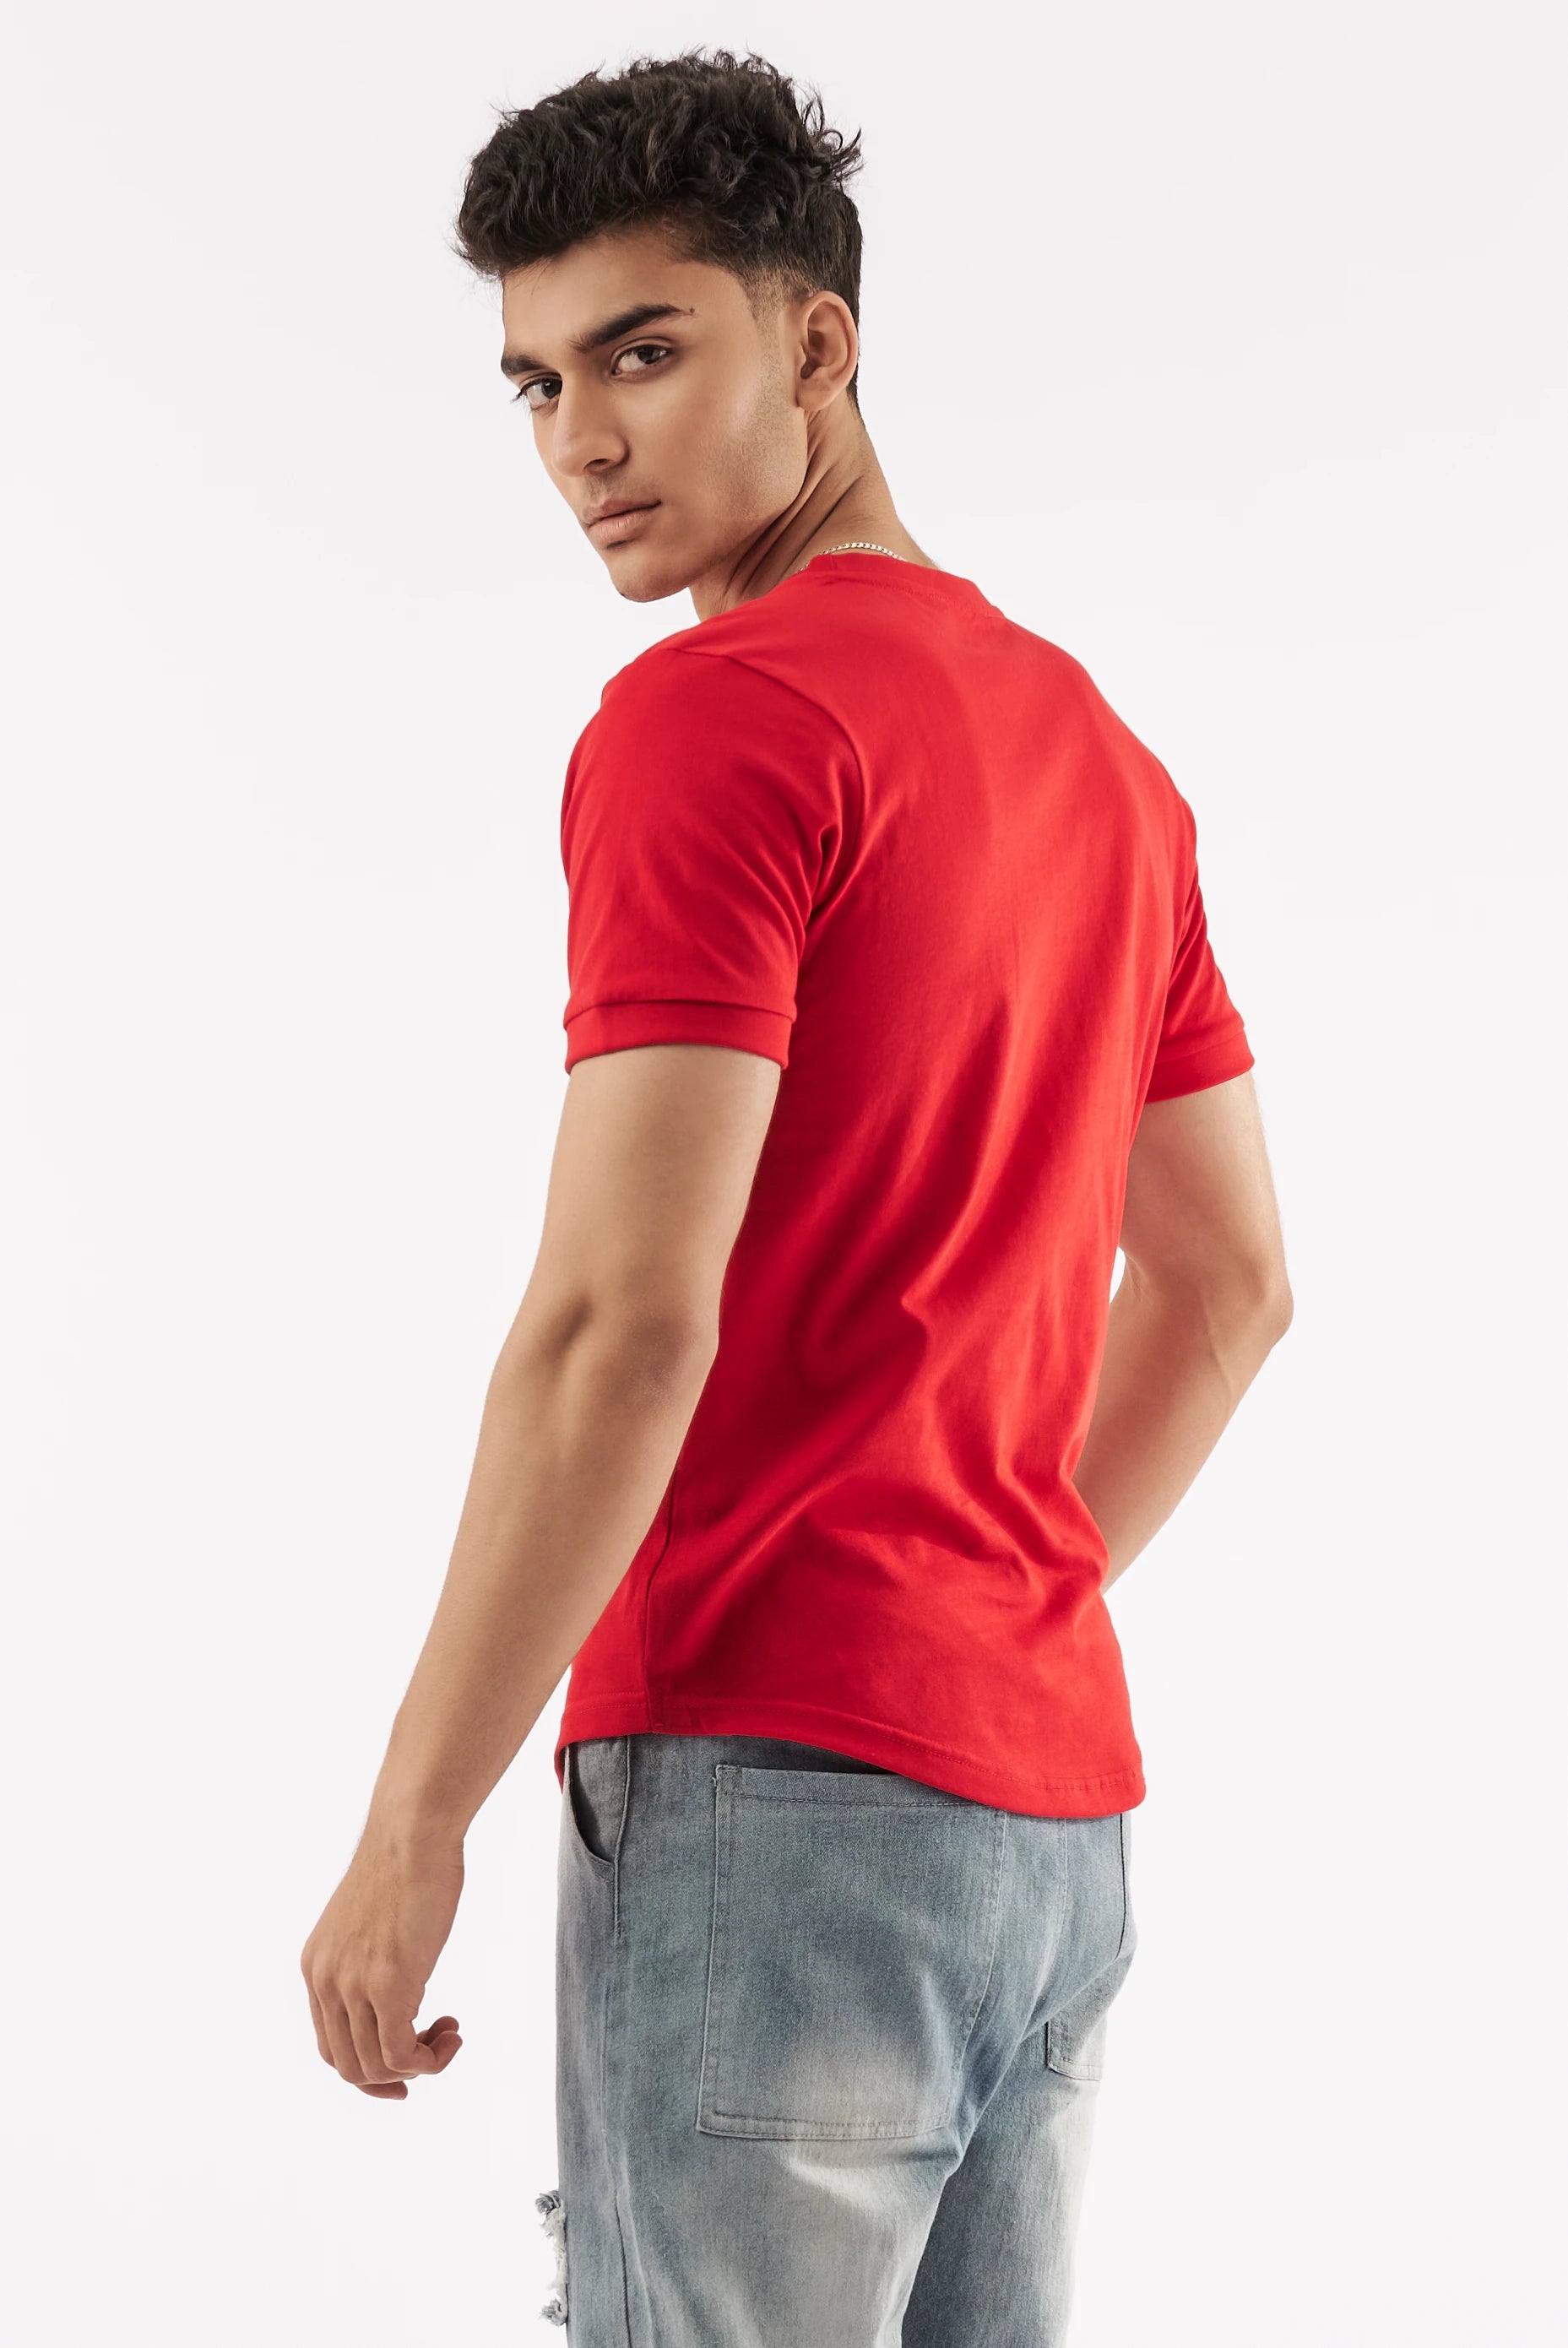 Men's Short-Sleeve T-Shirt Red